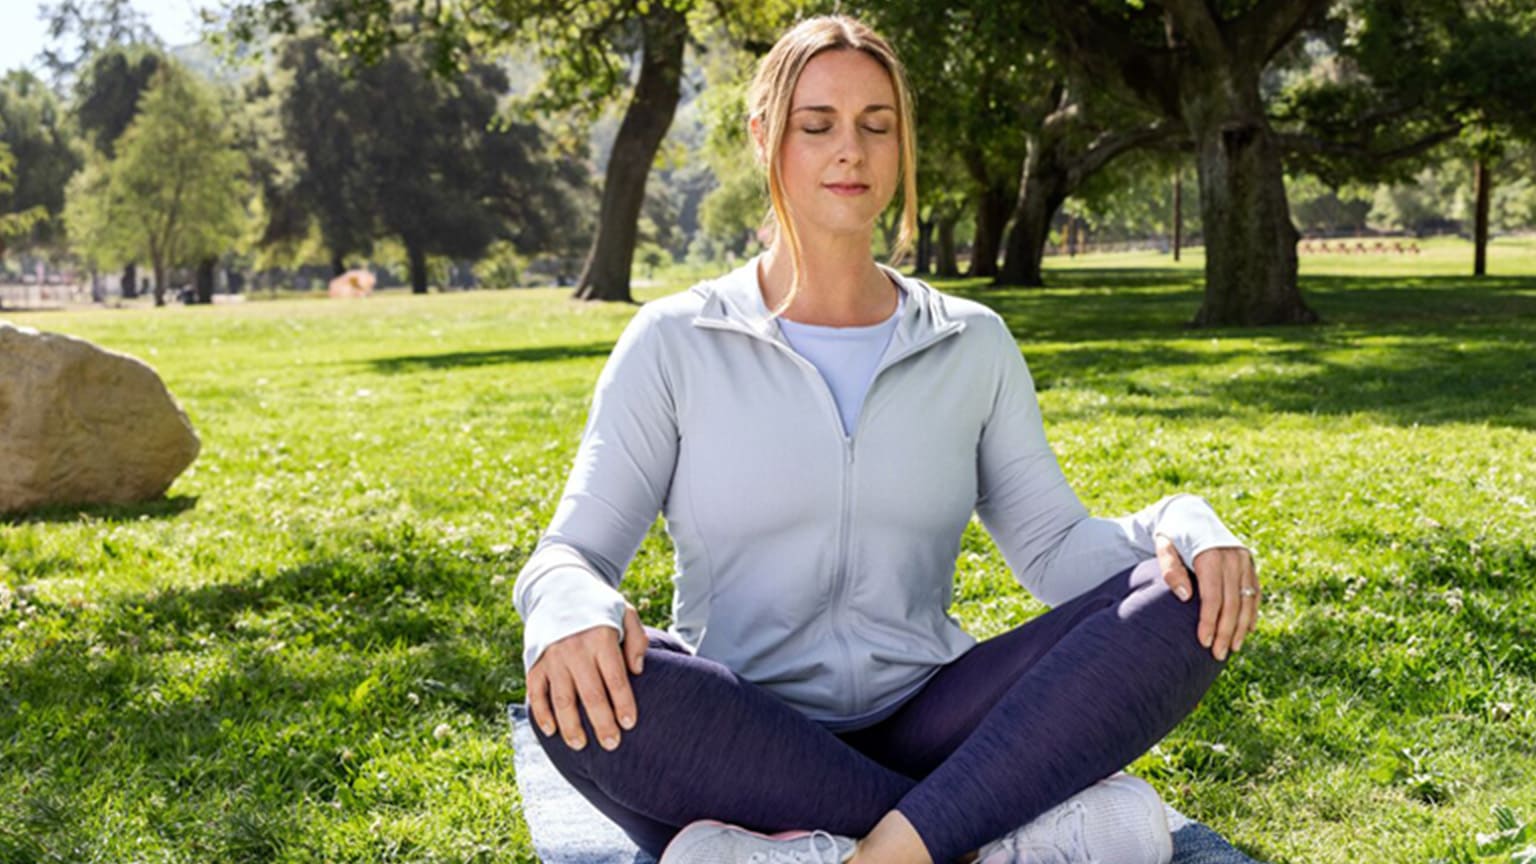 WW Mitglied Nicole meditiert im Park.